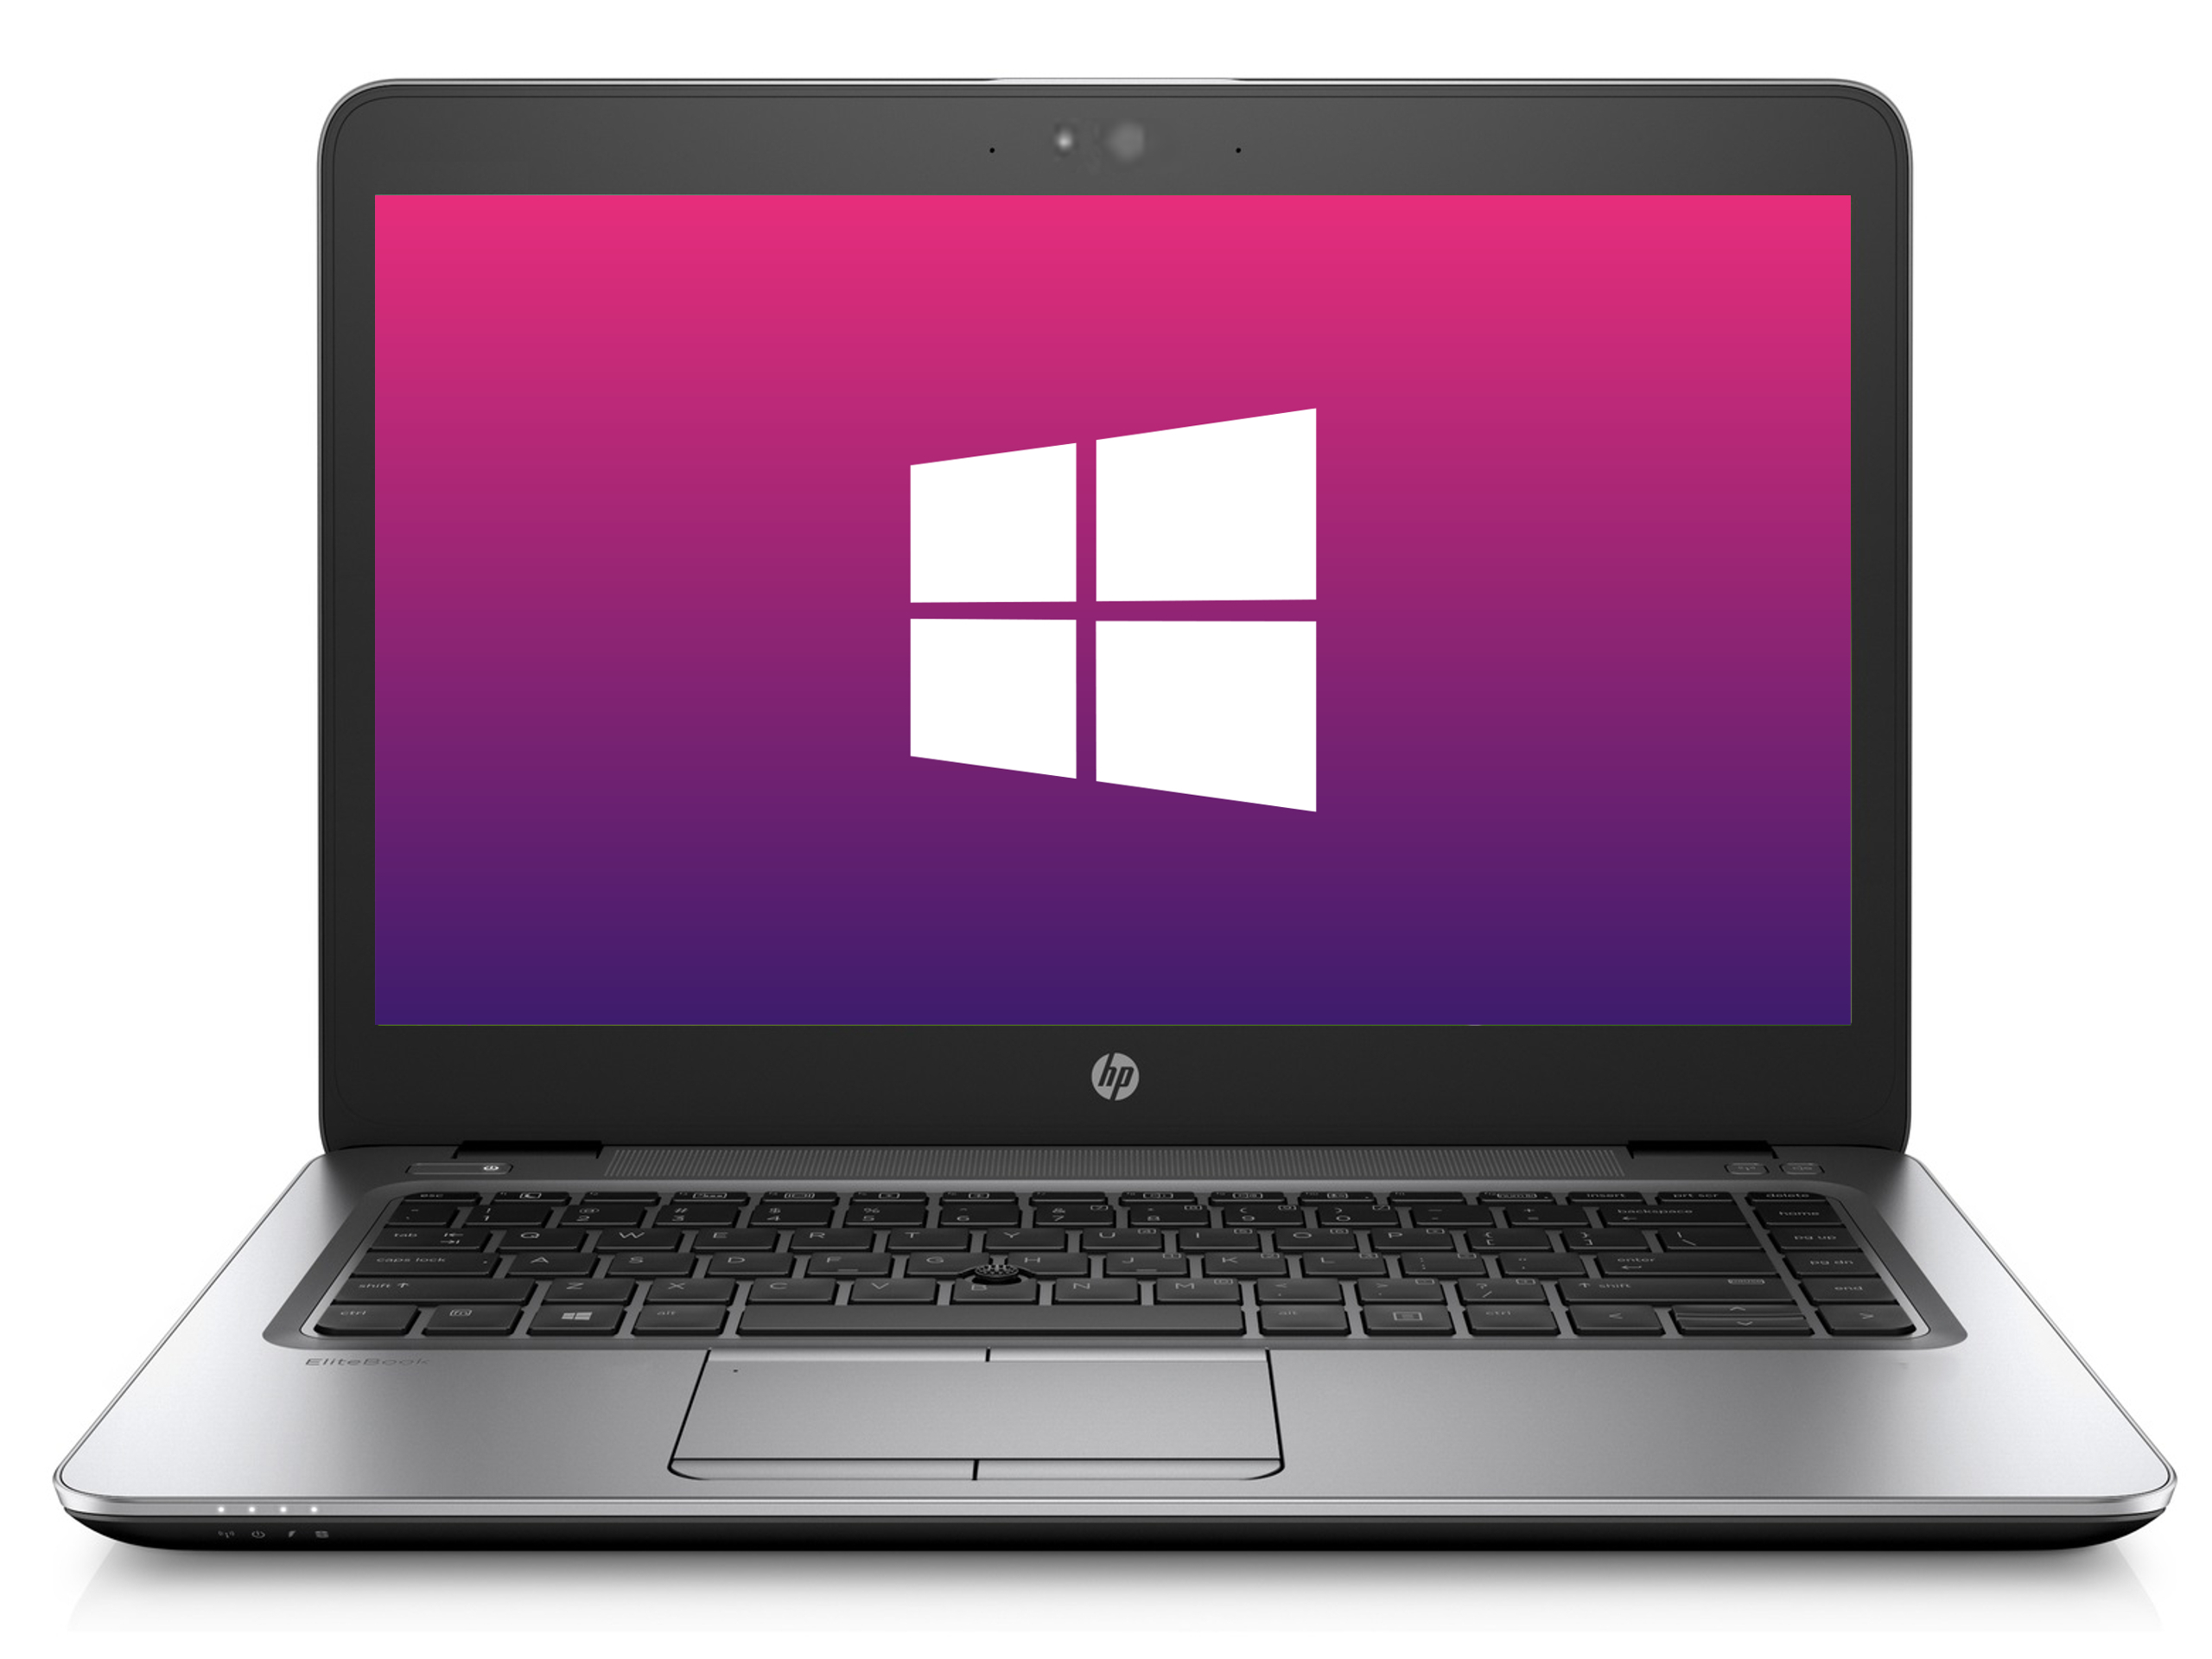 Ultrabook HP 840 G2 * 1366x768 * 8GB * 240GB SSD